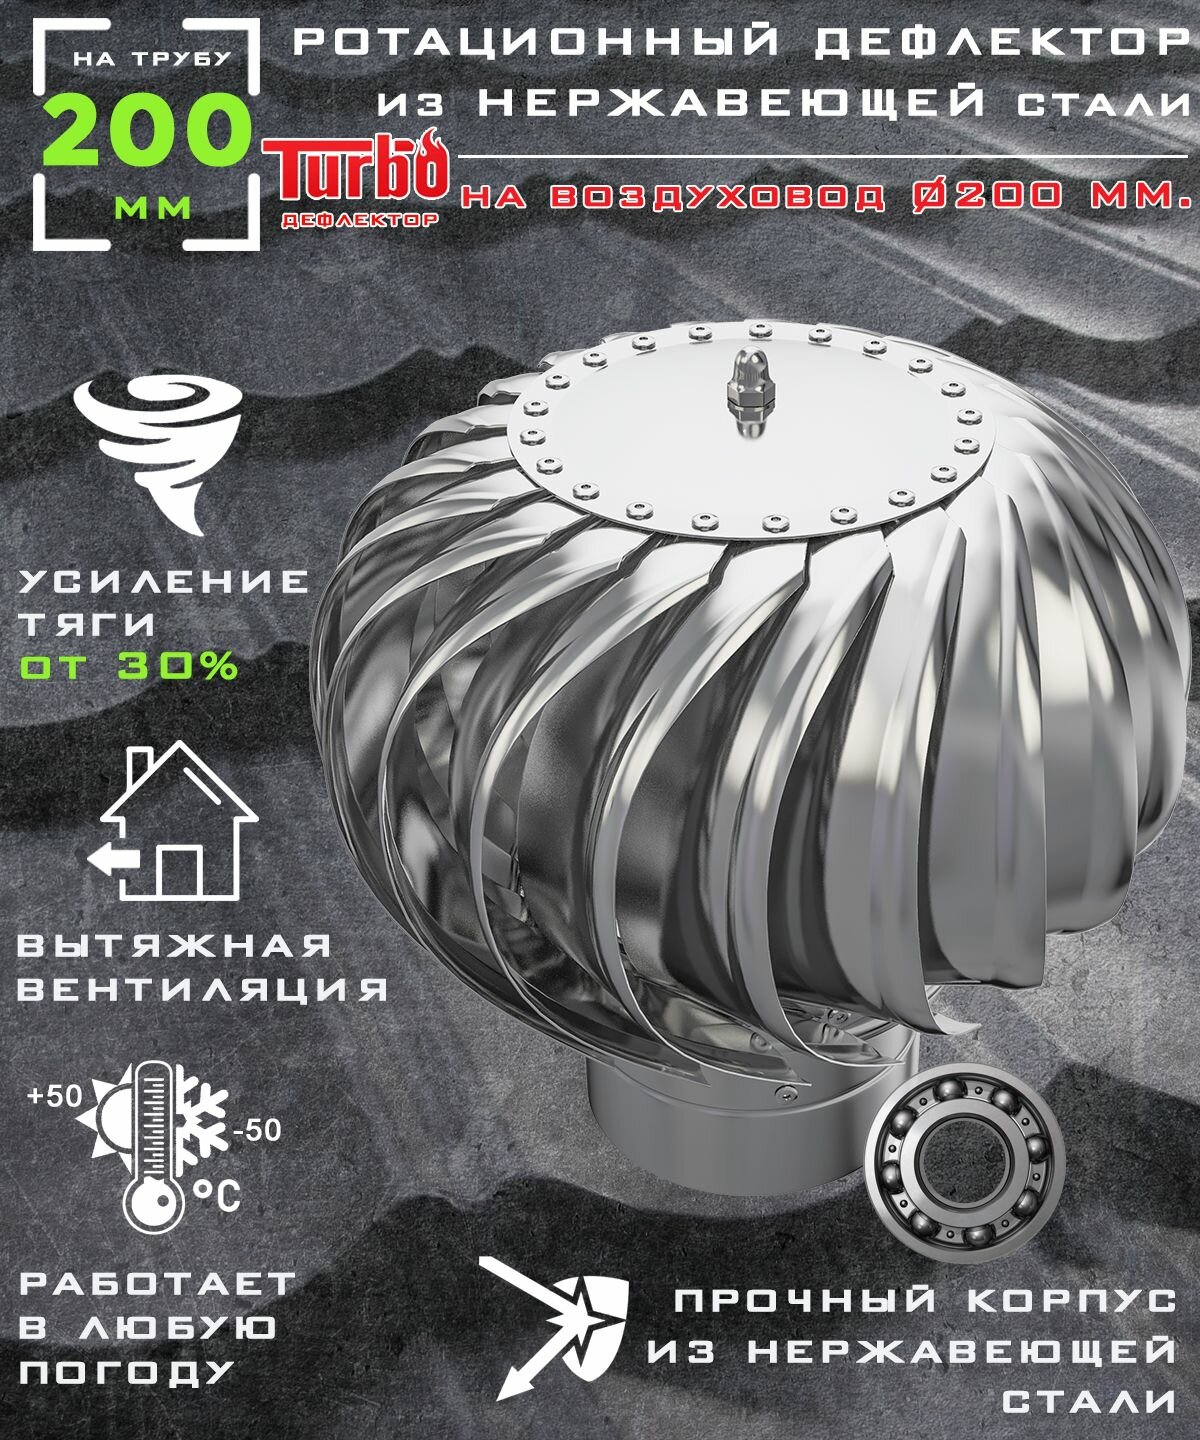 Ротационный дефлектор ТД 200н /турбодефлектор/ D200, нержавеющая сталь